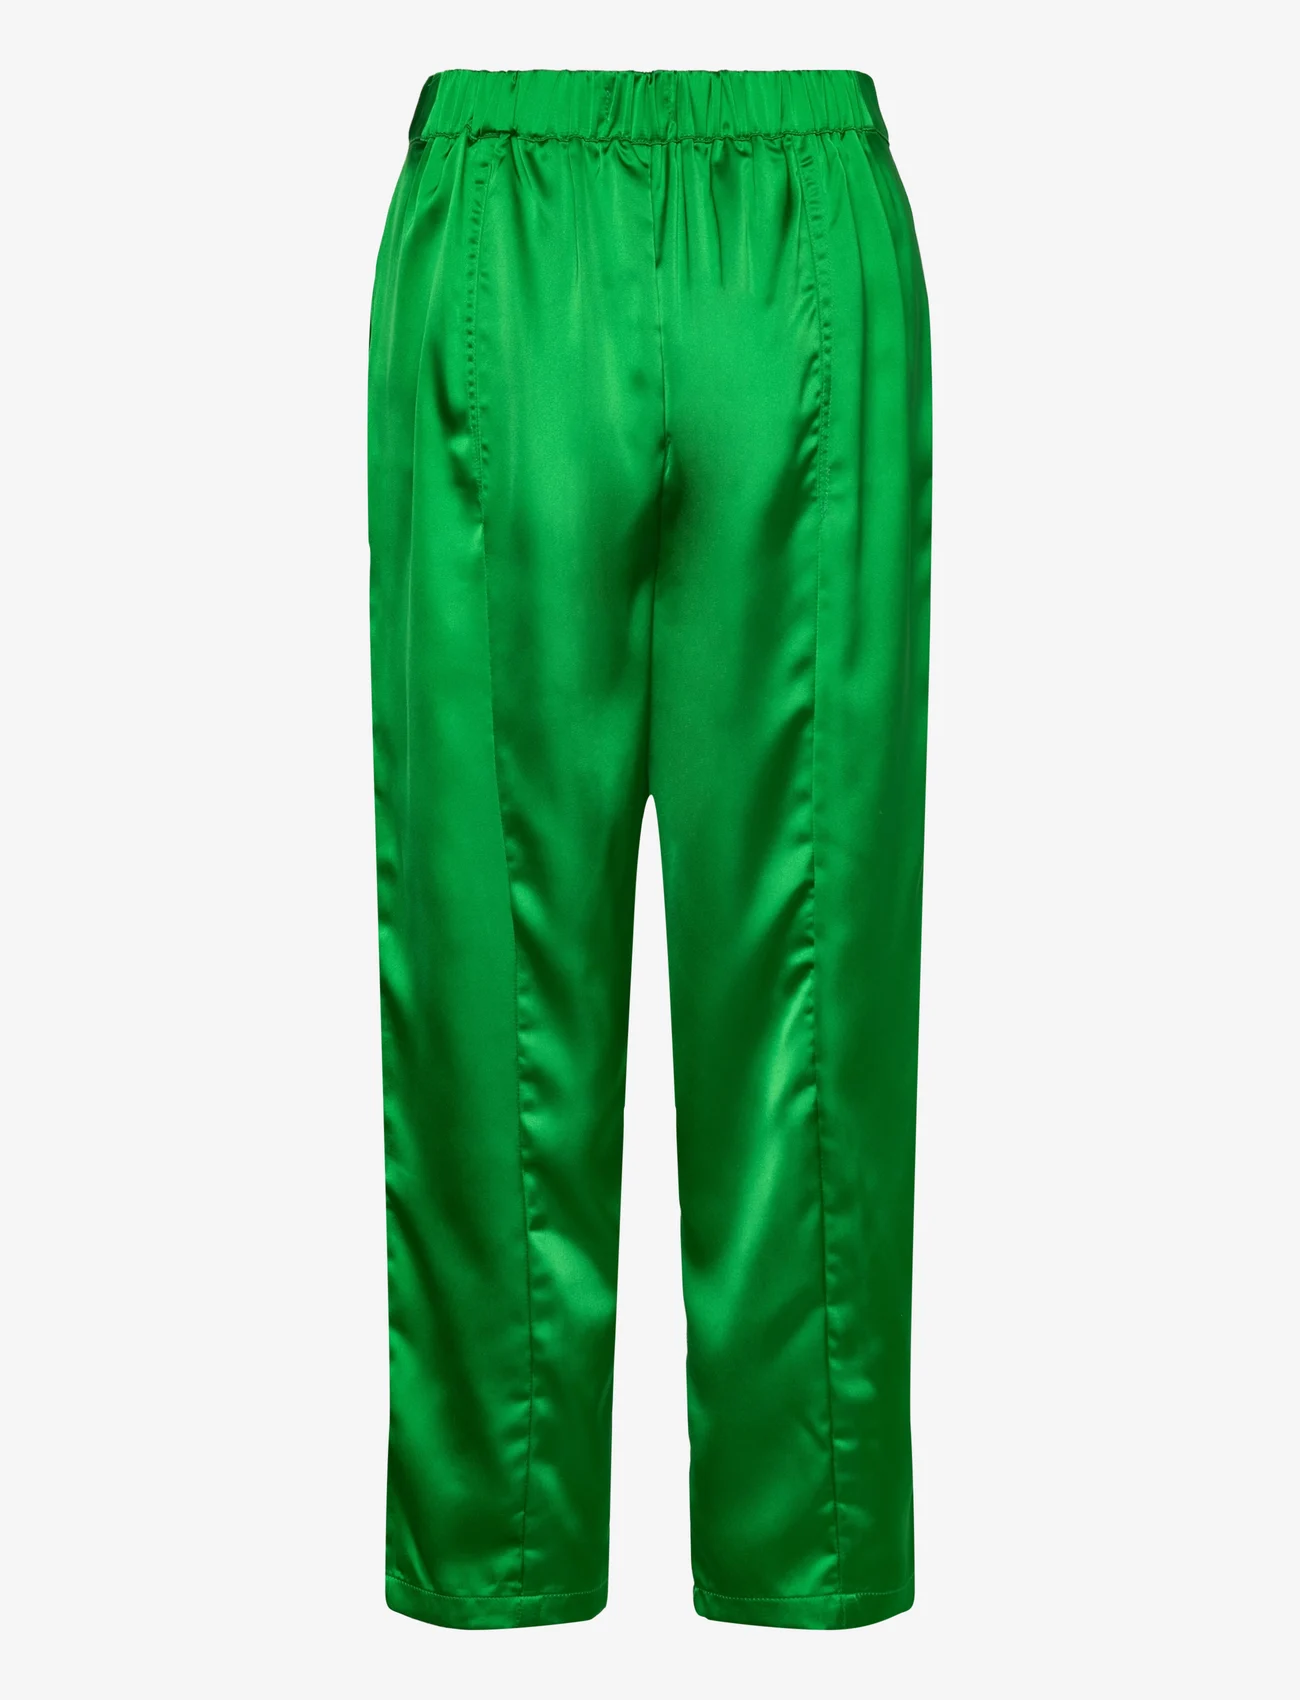 Lollys Laundry - Maisie Pants - tiesaus kirpimo kelnės - green - 1